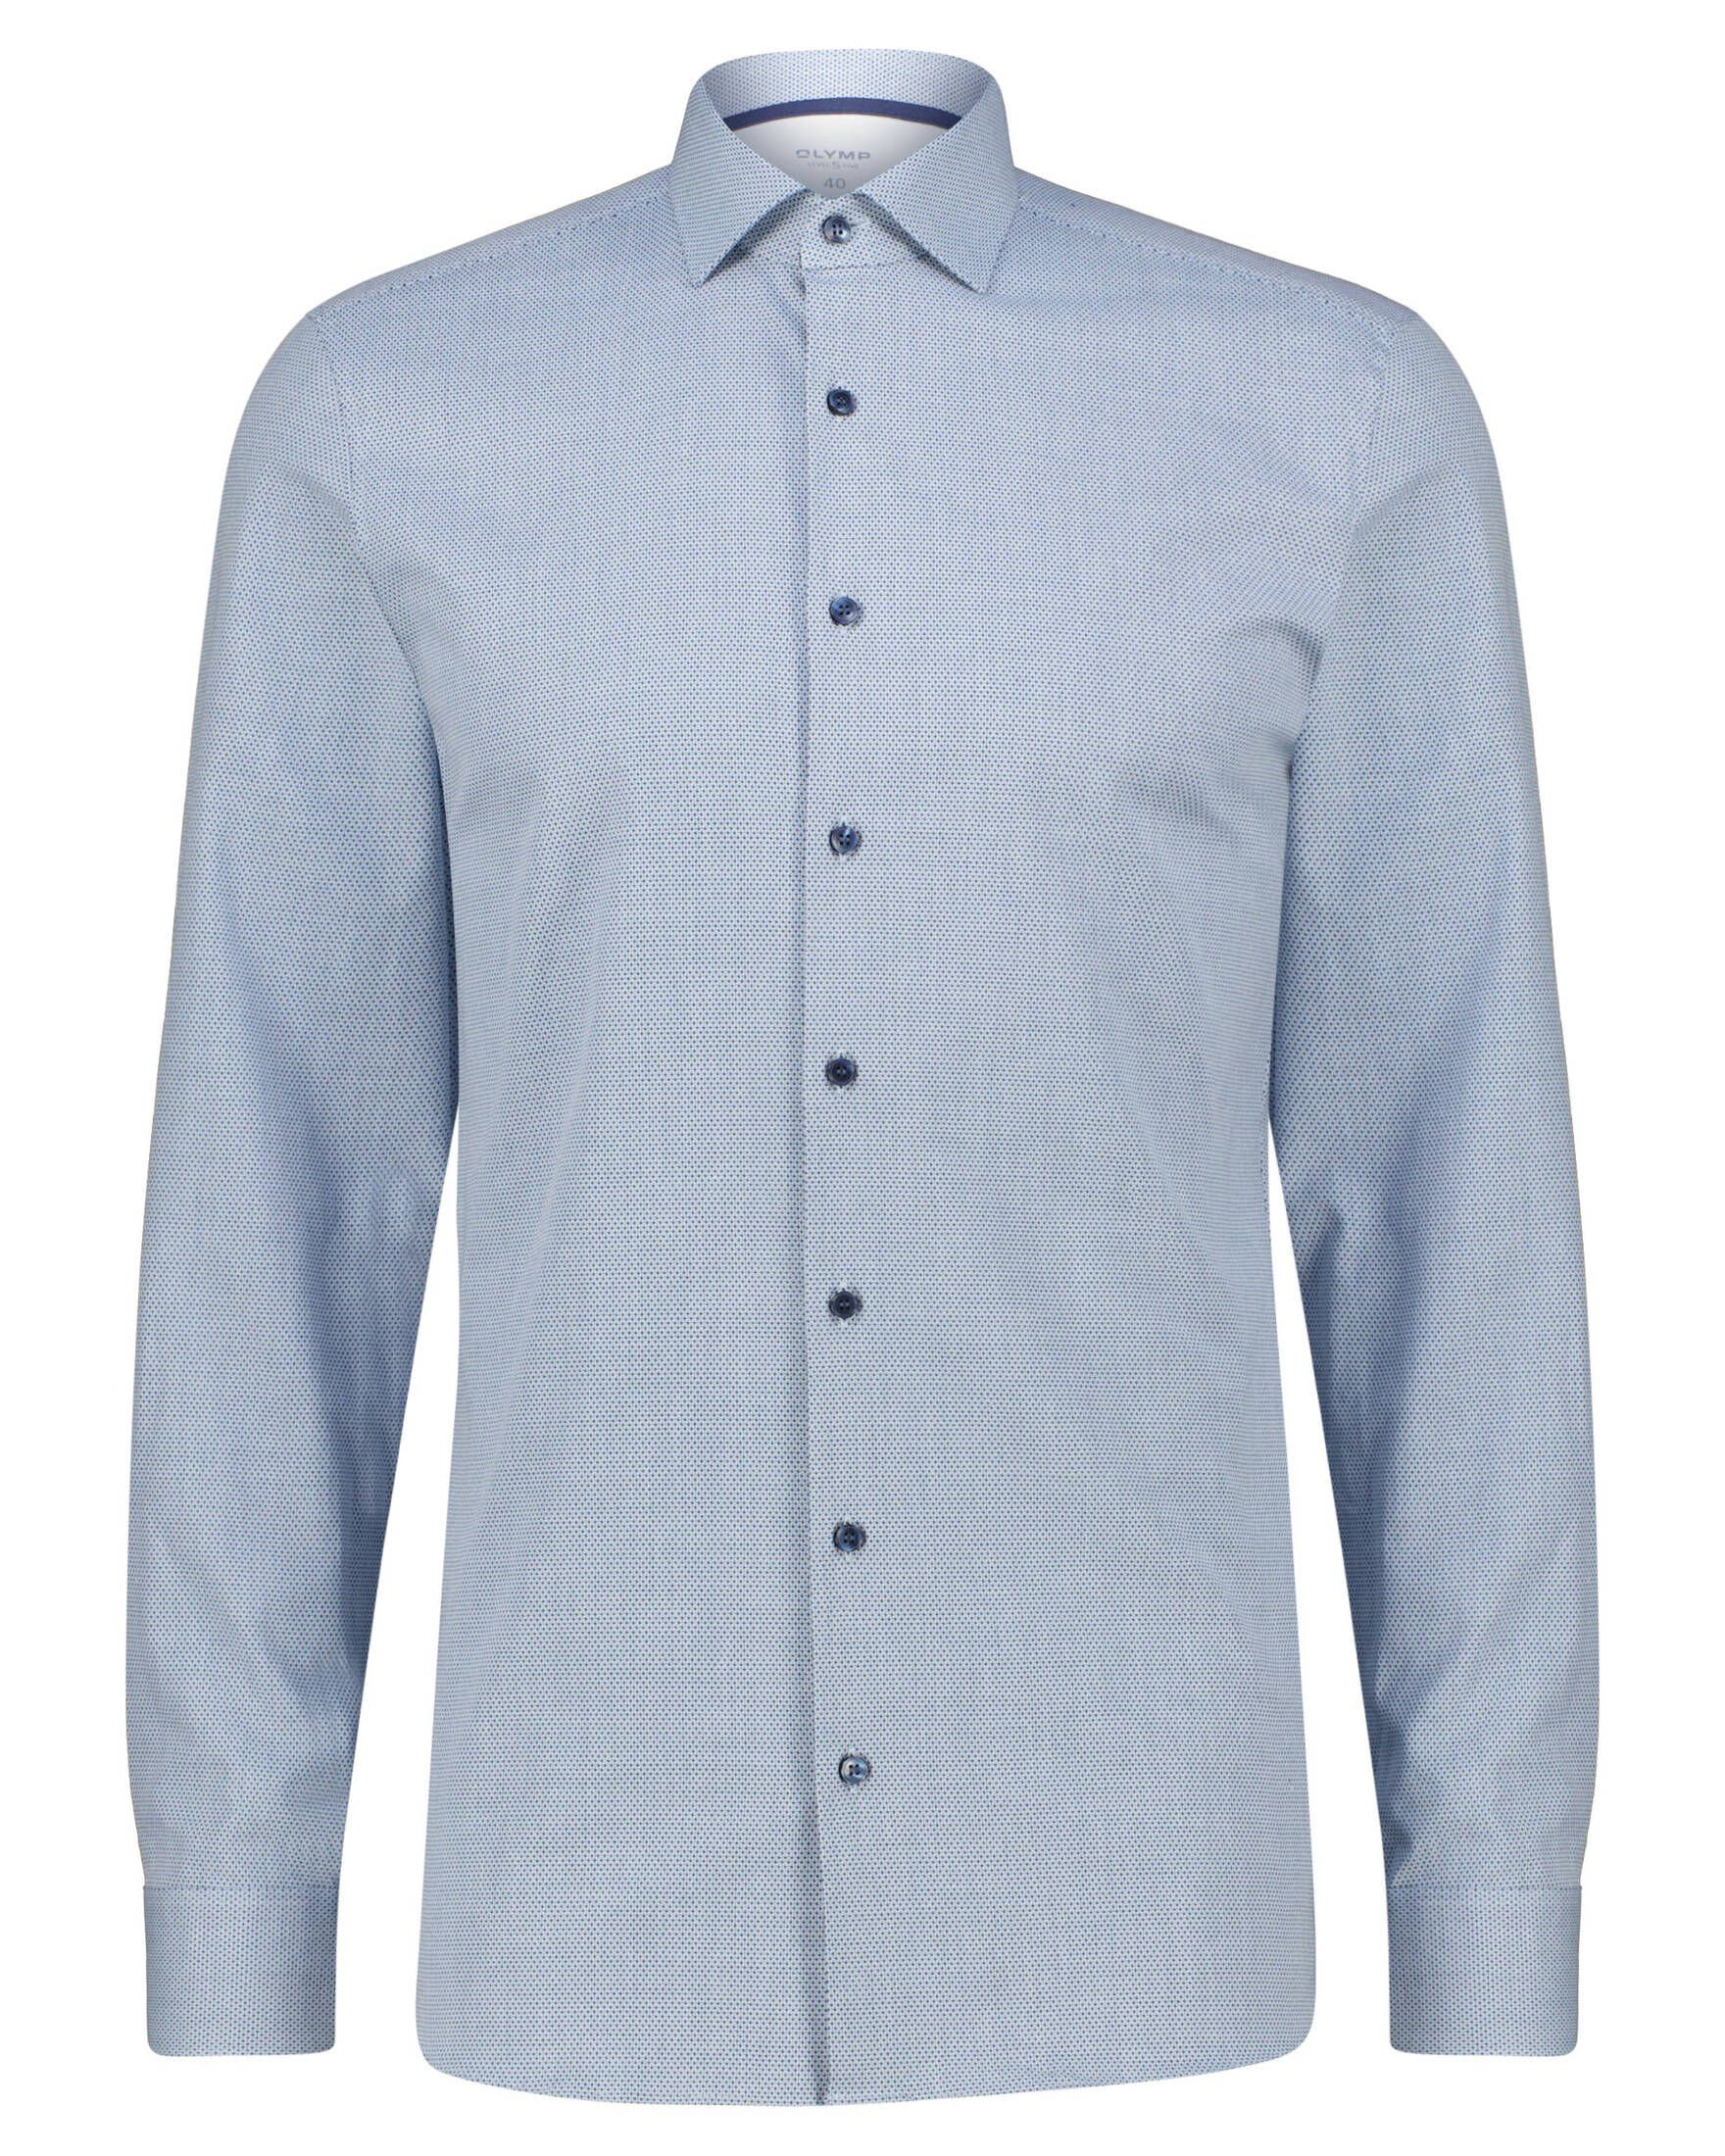 Herren Hemden OTTO Jersey kaufen | für online